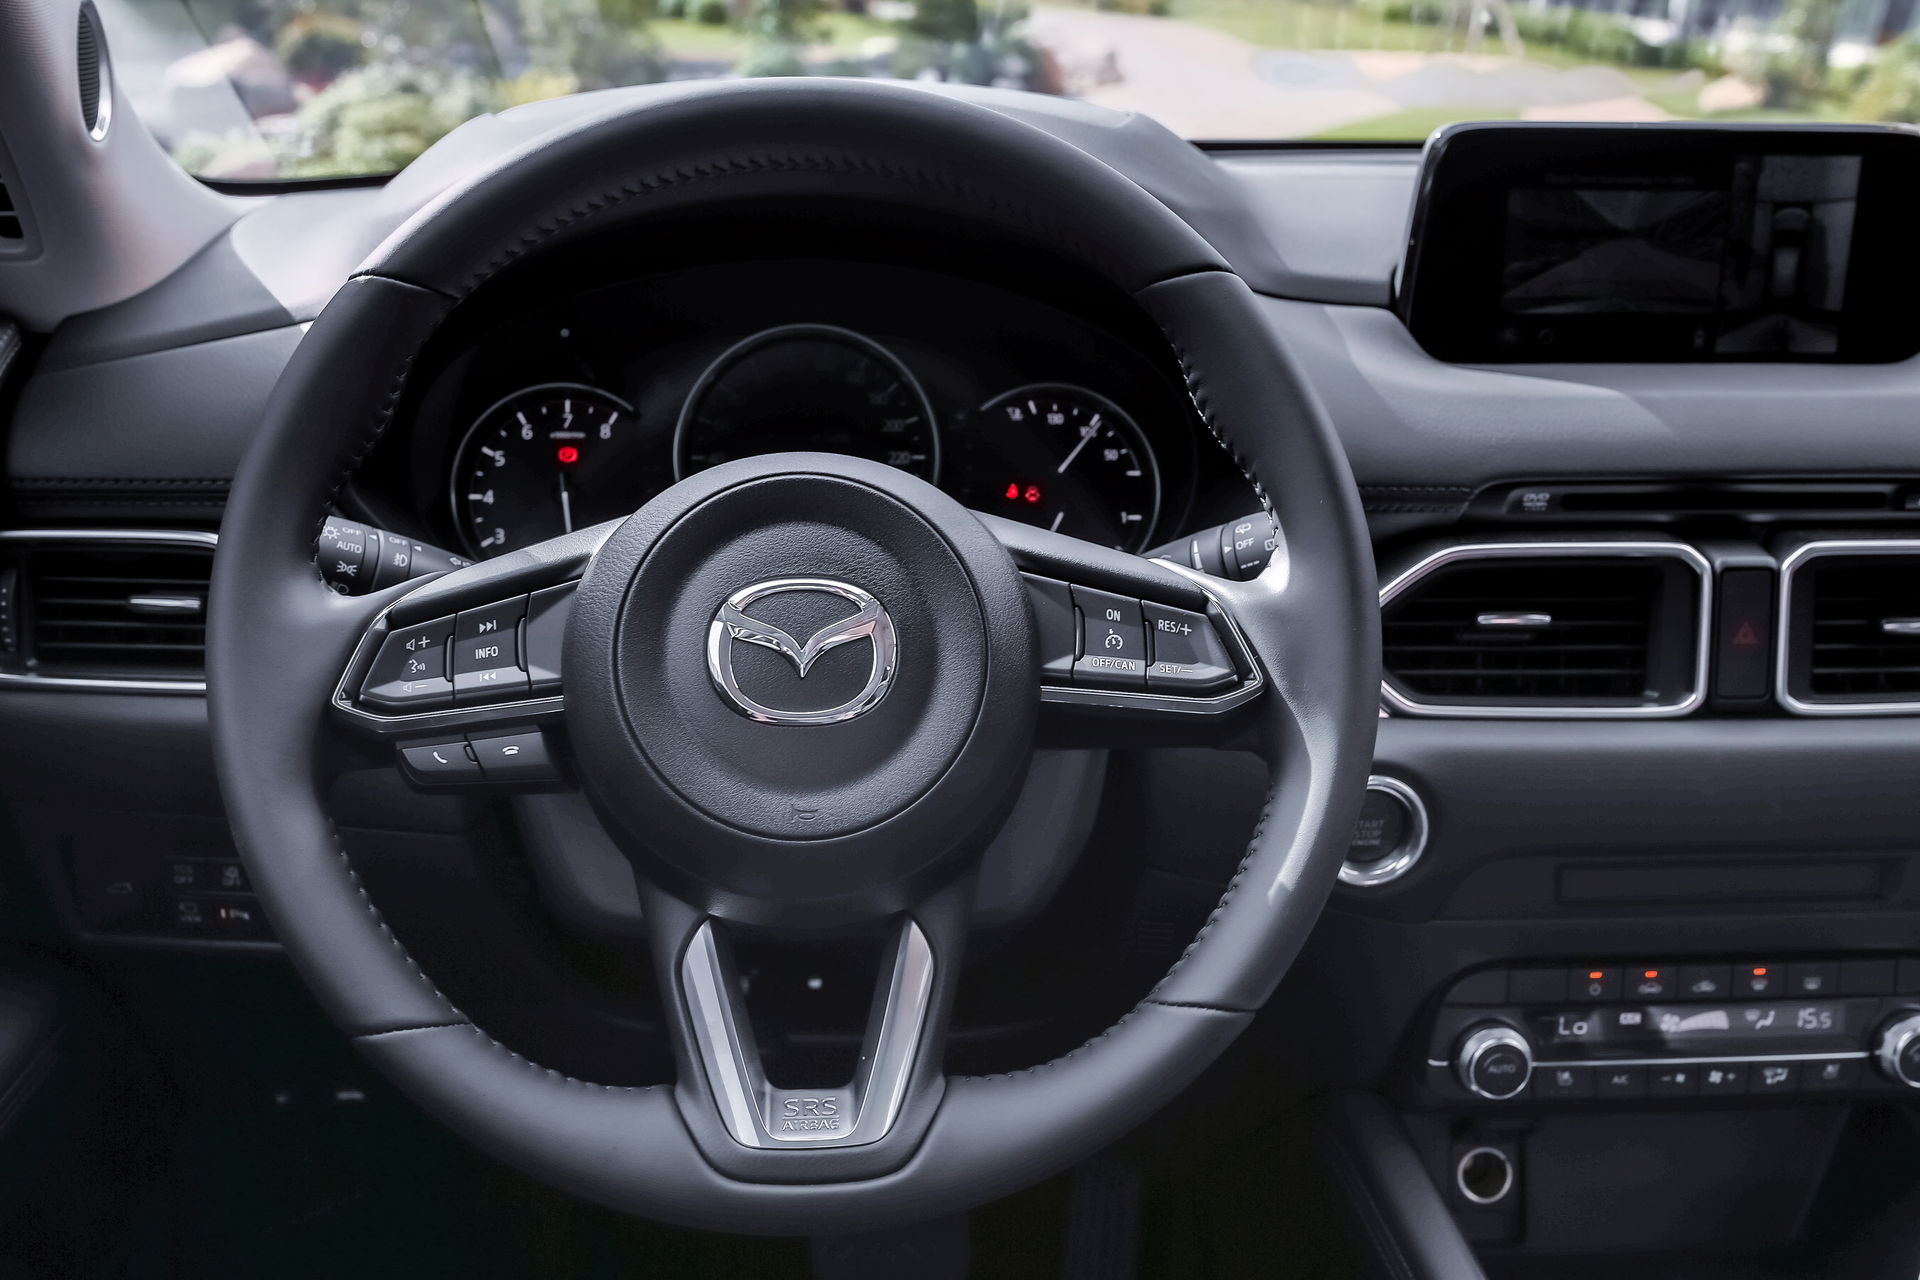 Mẫu xe SUV 5 chỗ Mazda CX-5 mới - Sản phẩm thế hệ 6.5 của Mazda chính thức ra mắt tại Việt Nam